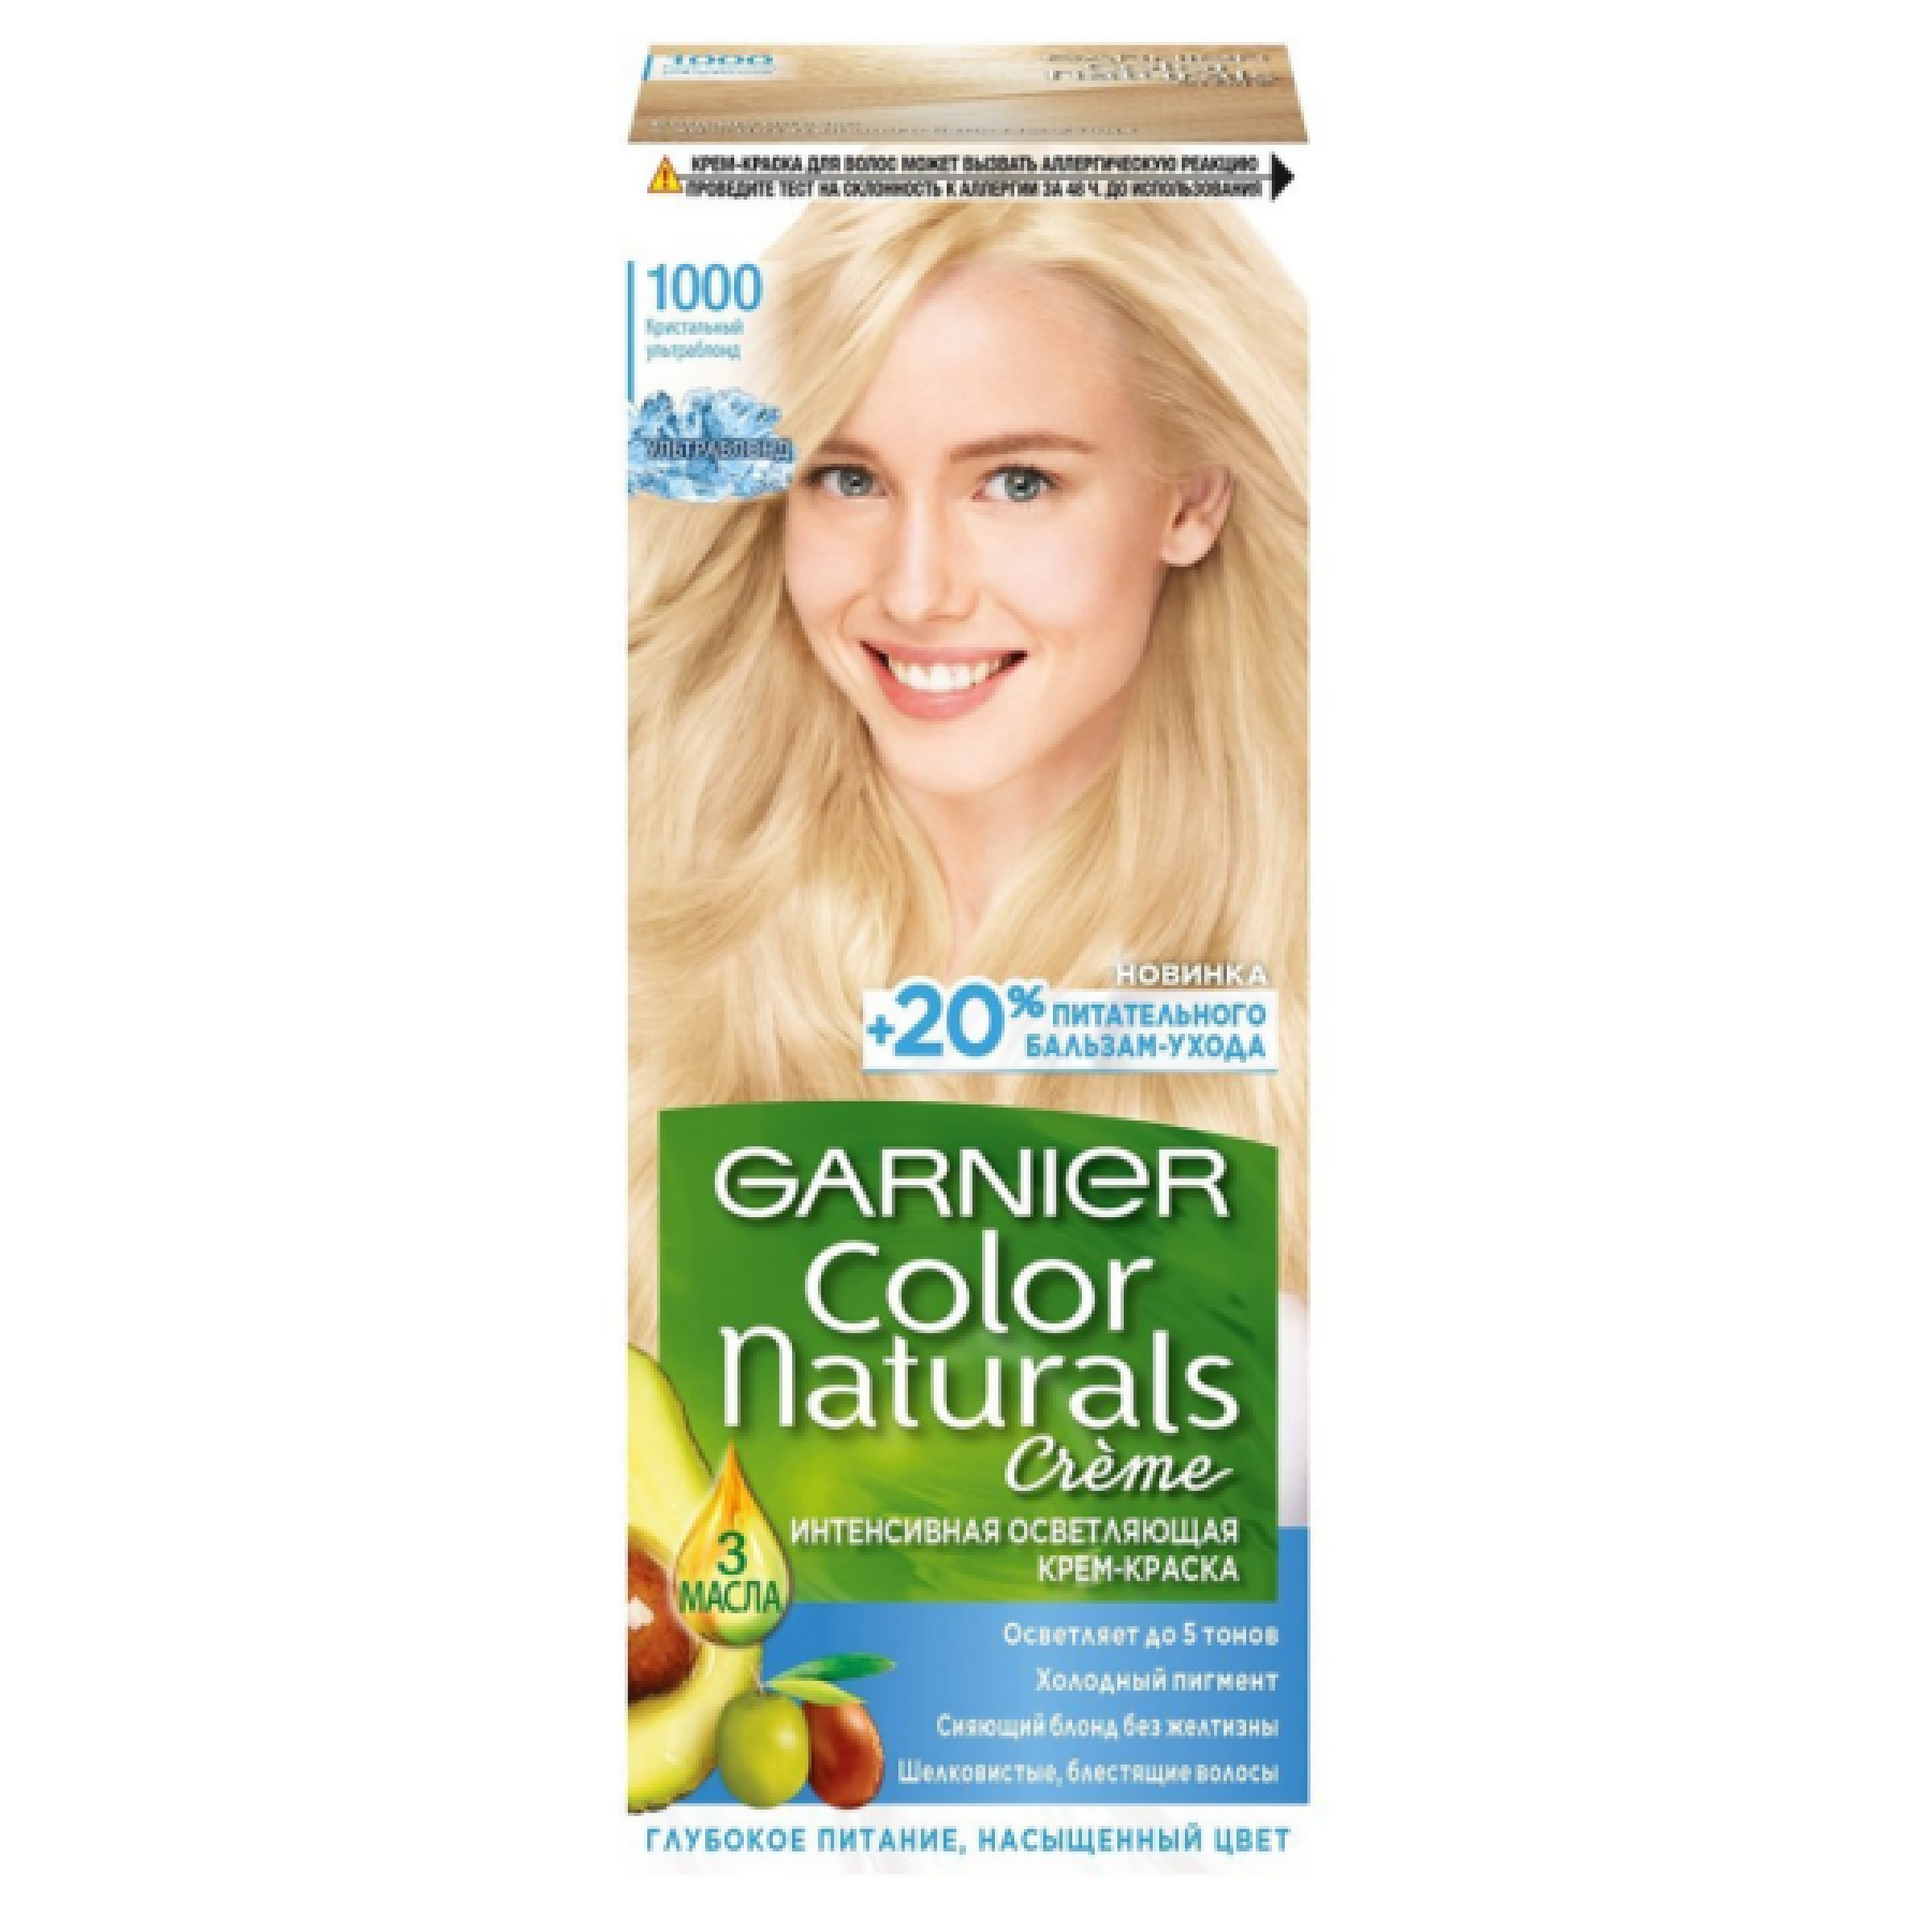 Стойкая крем-краска для волос Garnier Color Naturals тон 1000 Кристальный ультраблонд, 110 мл